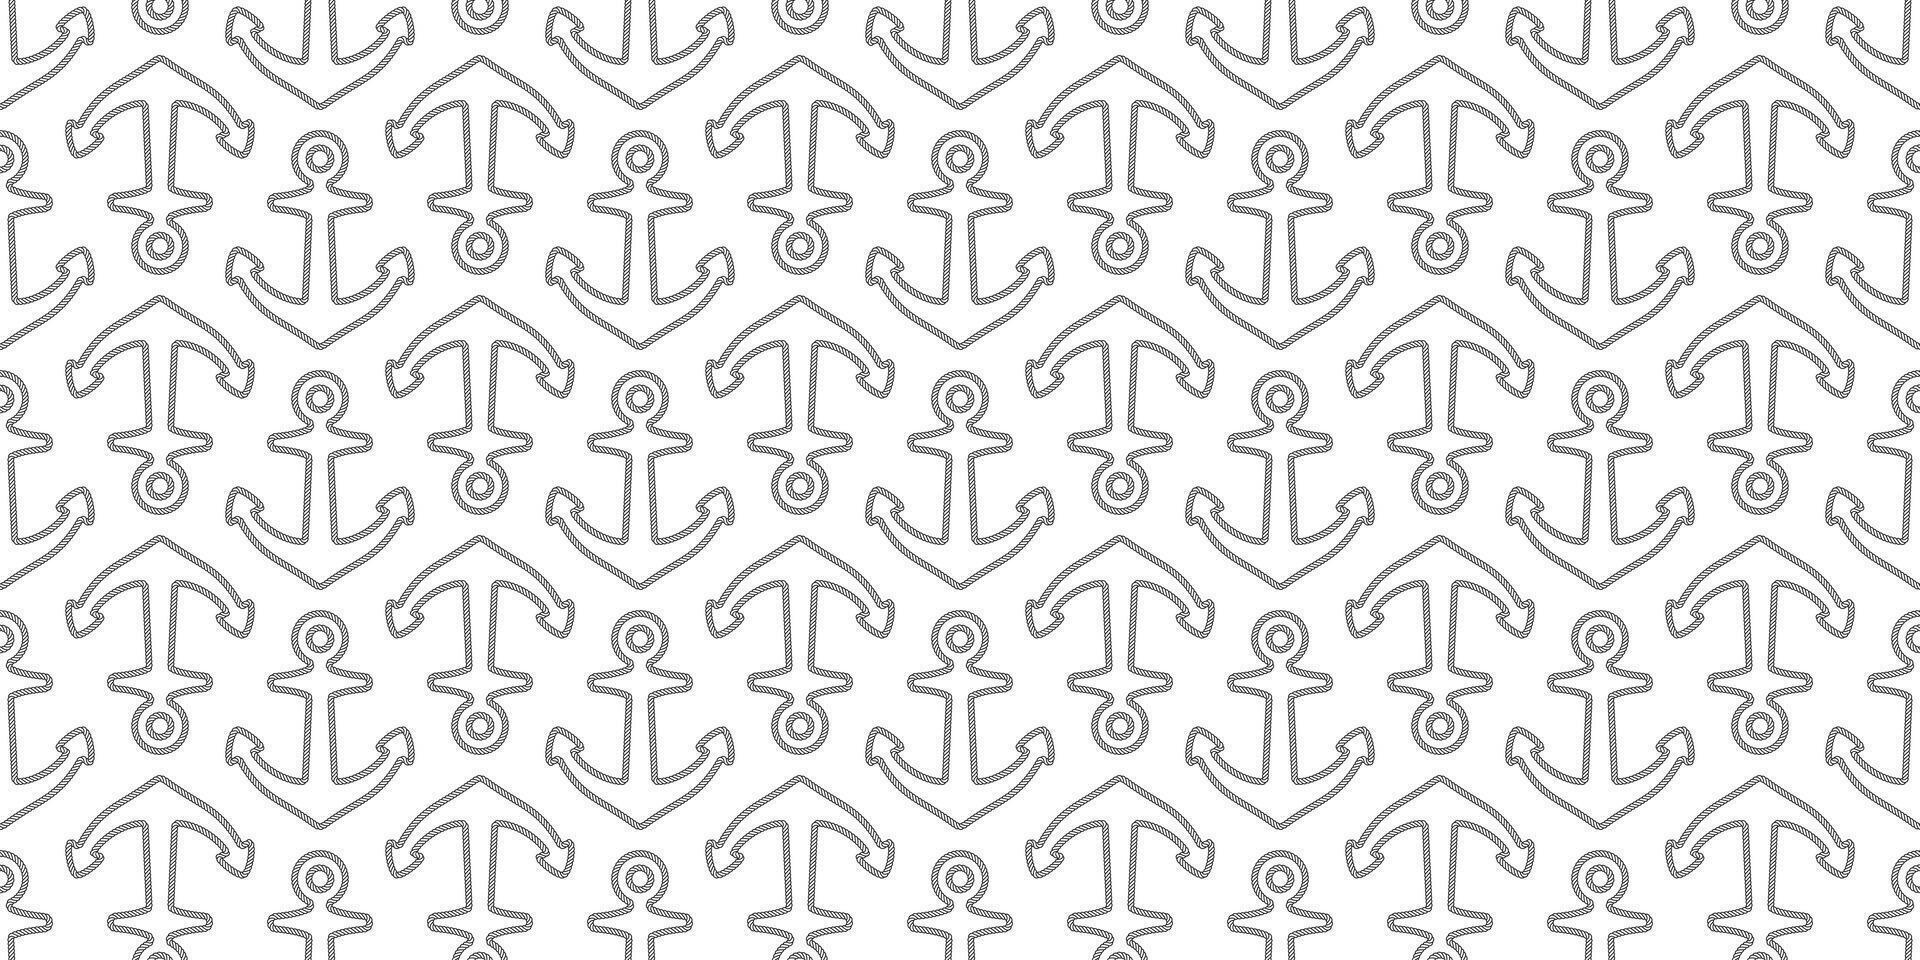 âncora desatado padronizar corda laço vetor barco pirata leme náutico marítimo mar oceano repetir papel de parede cachecol isolado telha fundo ilustração linha branco Projeto